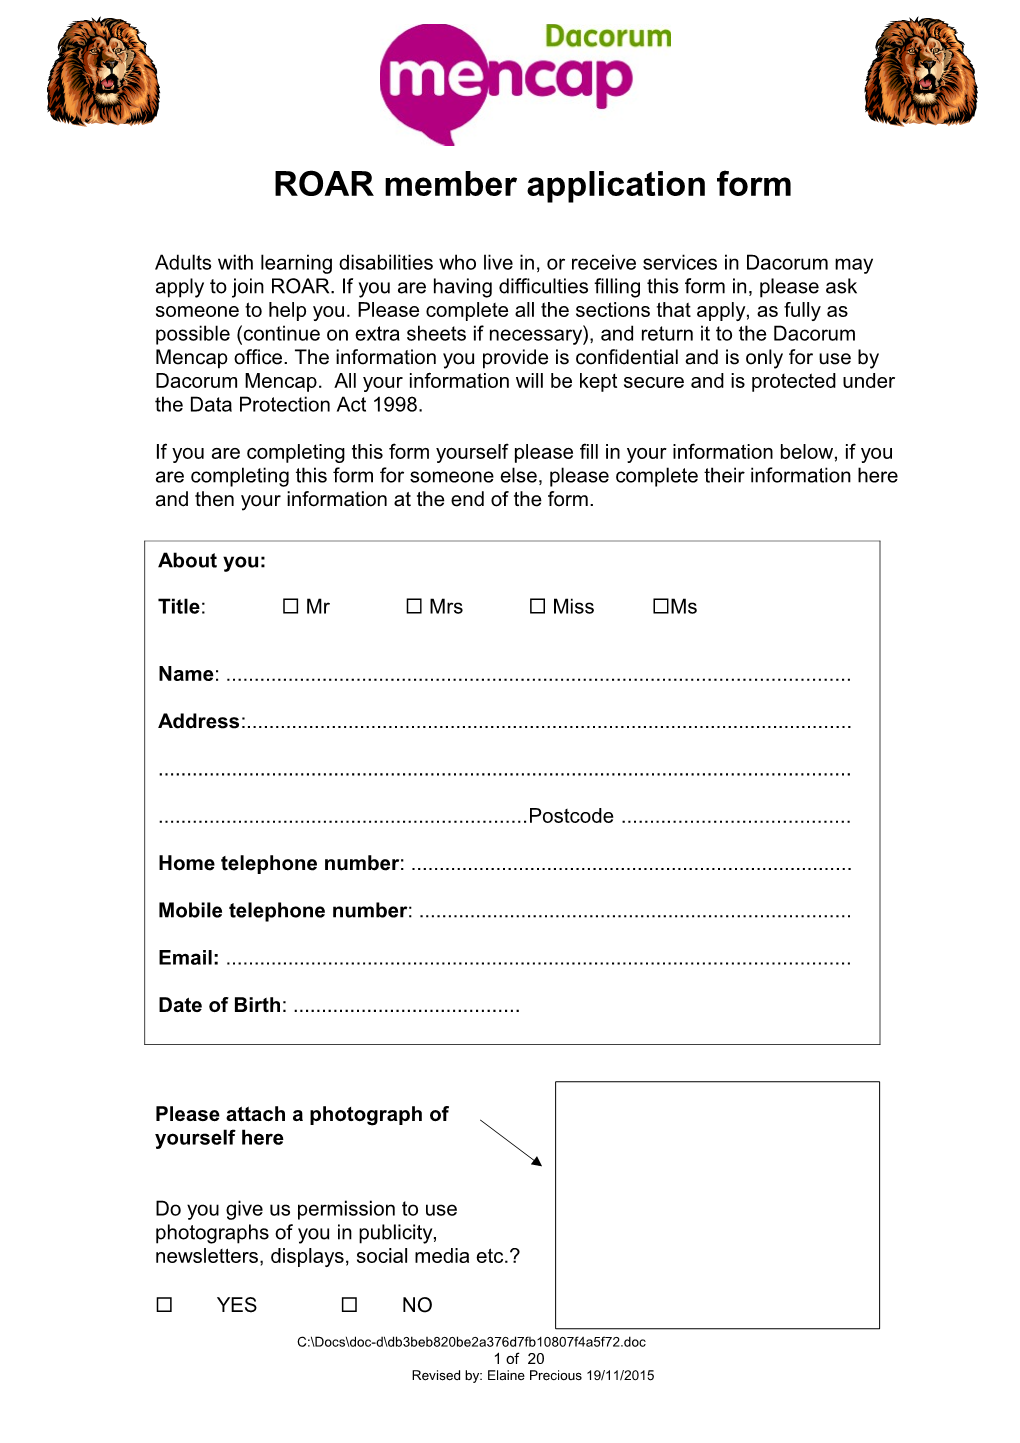 ROAR Member Application Form